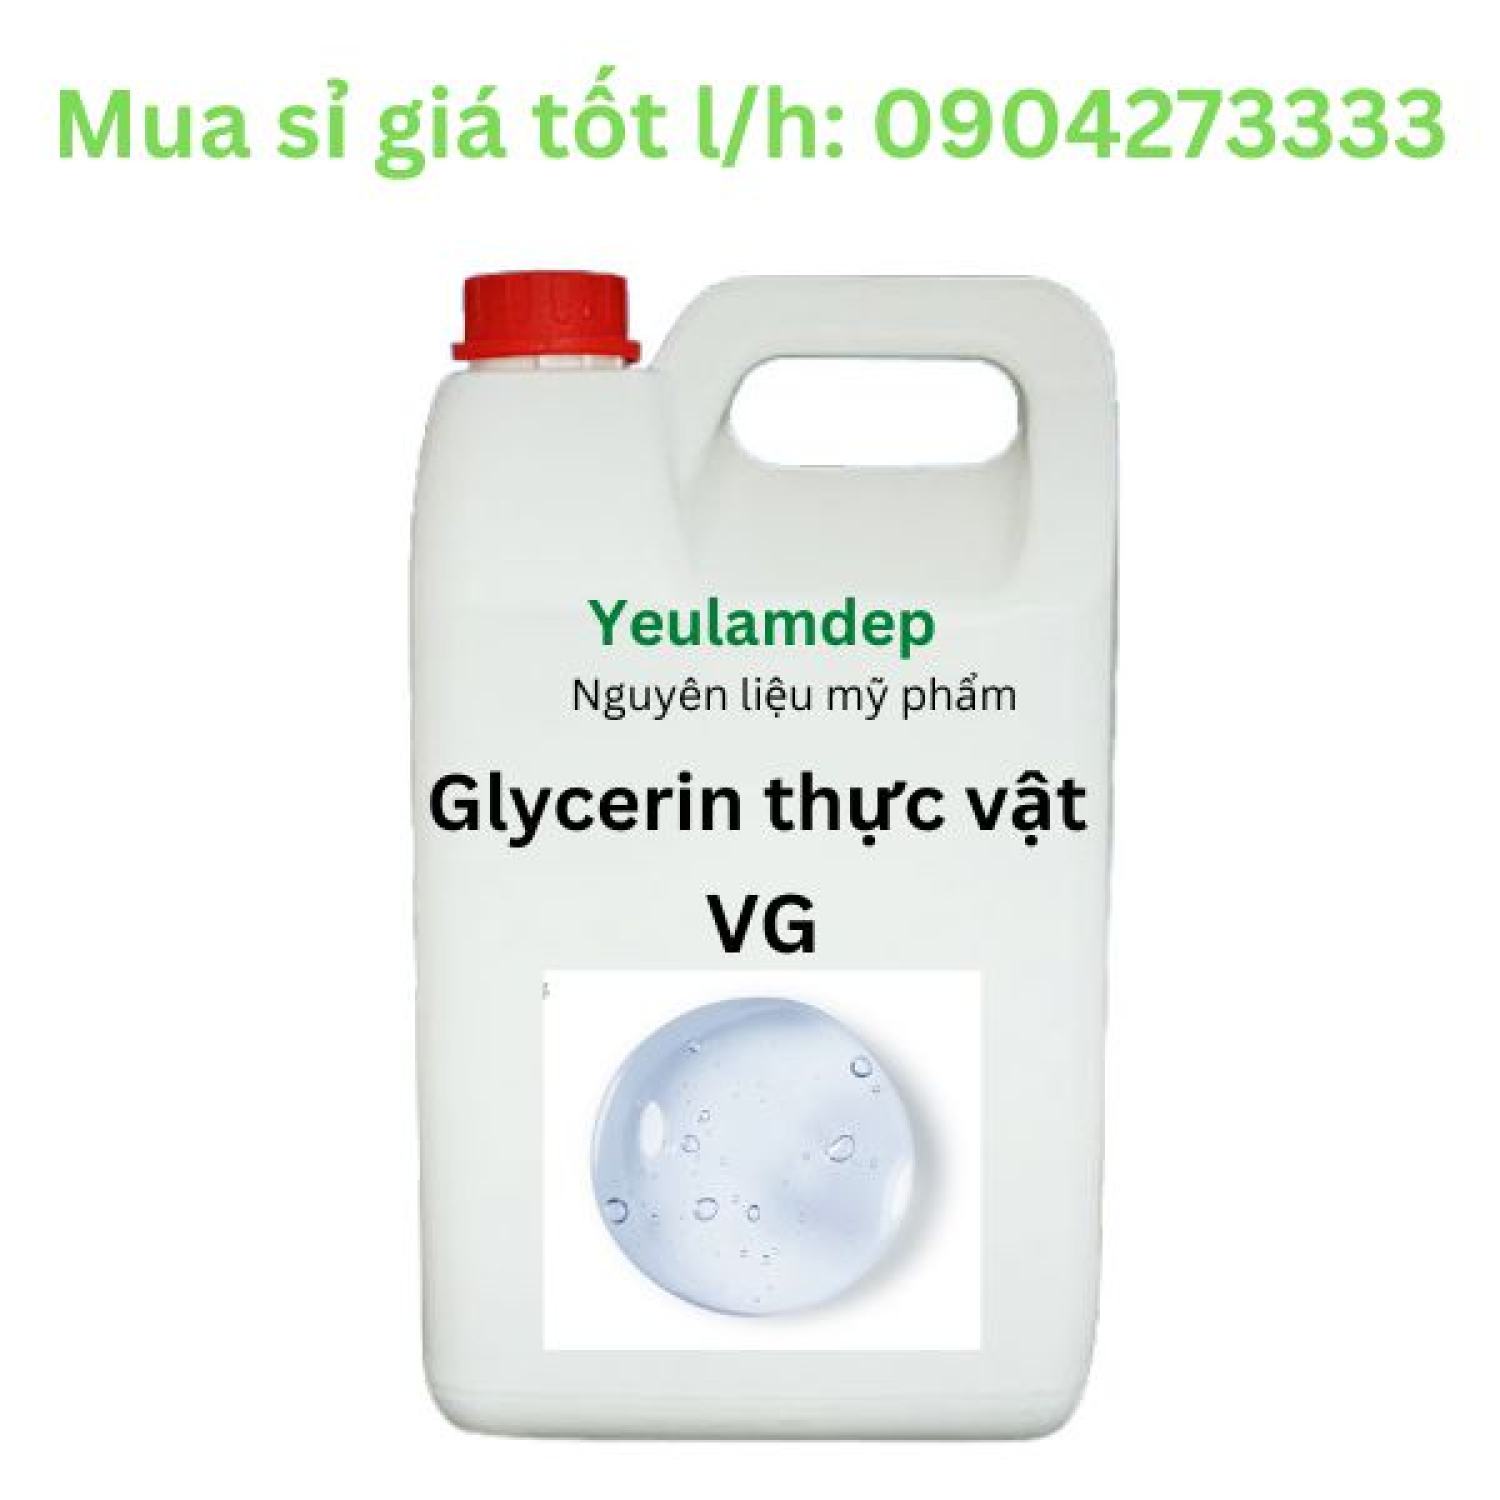 Glycerin thực vật 99,7% VG - nguyên liệu mỹ phẩm - 1 kg